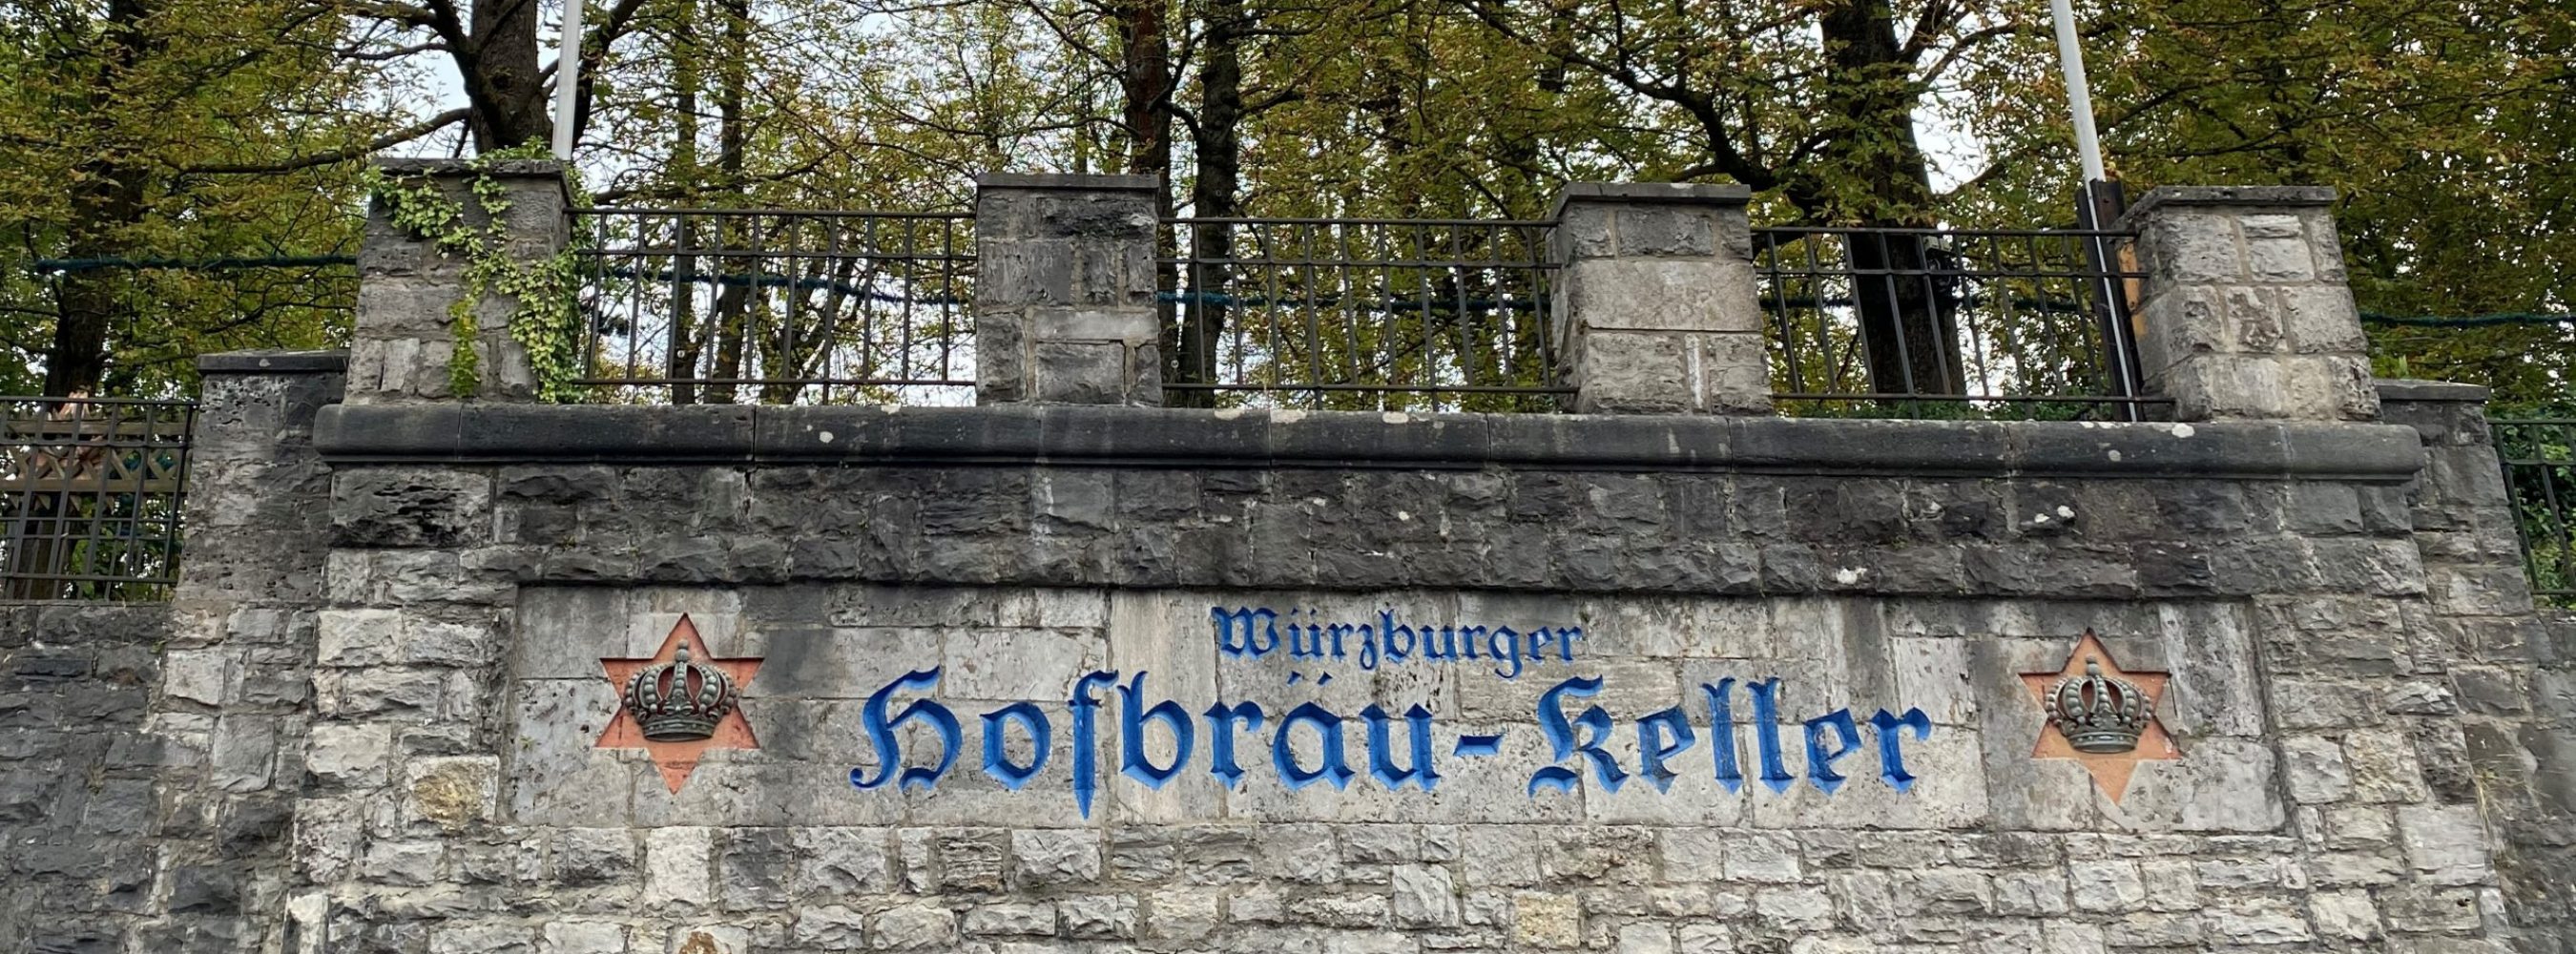 Mauer mit Schriftzug des Hofbräukellers in Würzburg